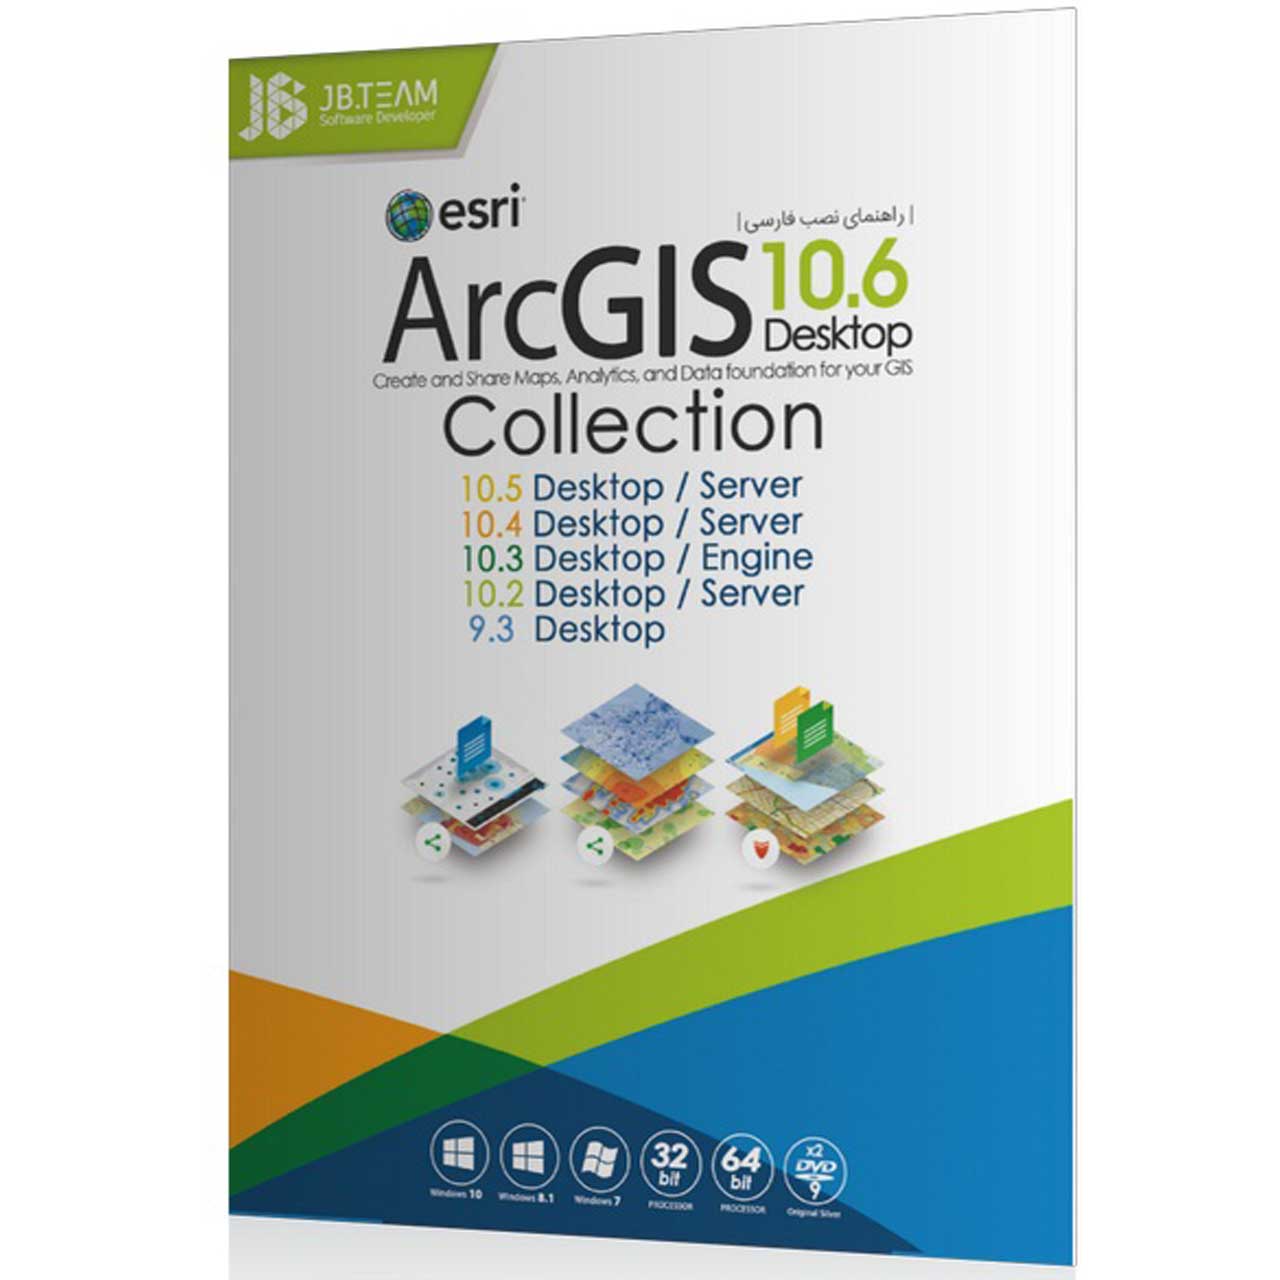 مجموعه نرم افزاری  ArcGIS 10 6 و Collection نشر جی بی تیم